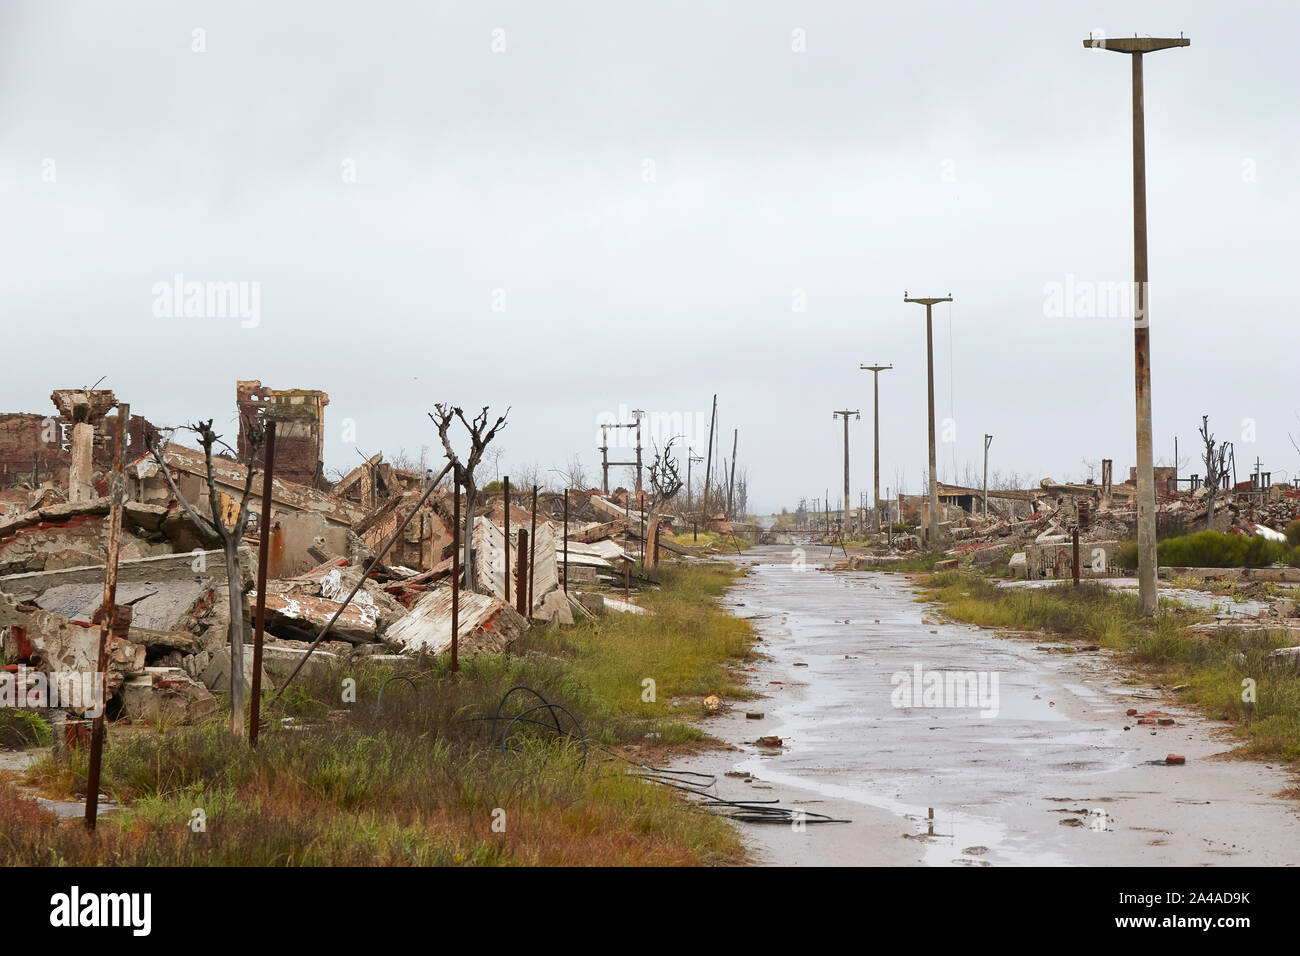 Le paysage apocalyptique de Epecuen, une fois qu'une ville touristique, province de Buenos Aires, Argentine. Banque D'Images